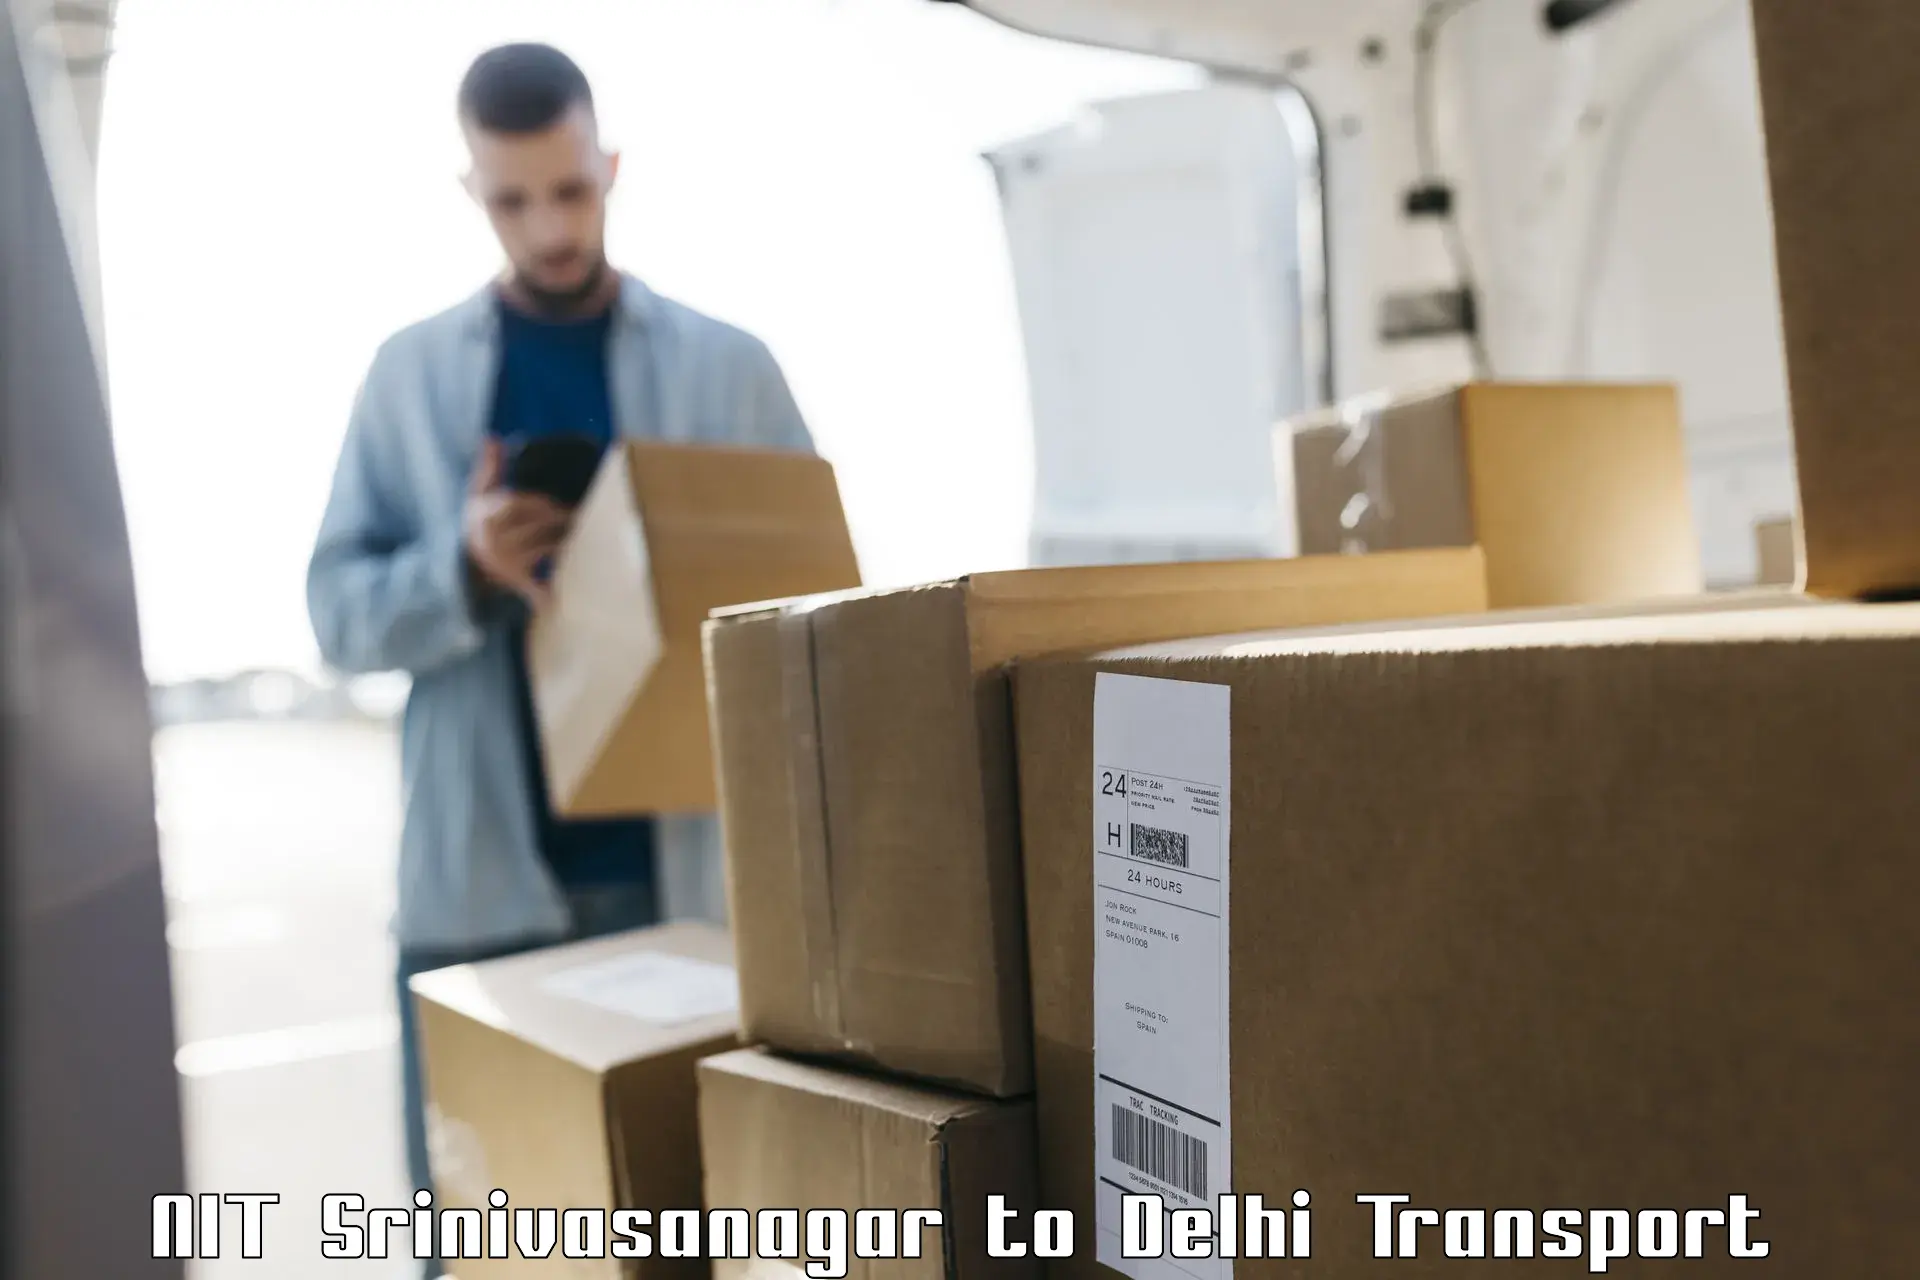 Container transportation services NIT Srinivasanagar to NCR